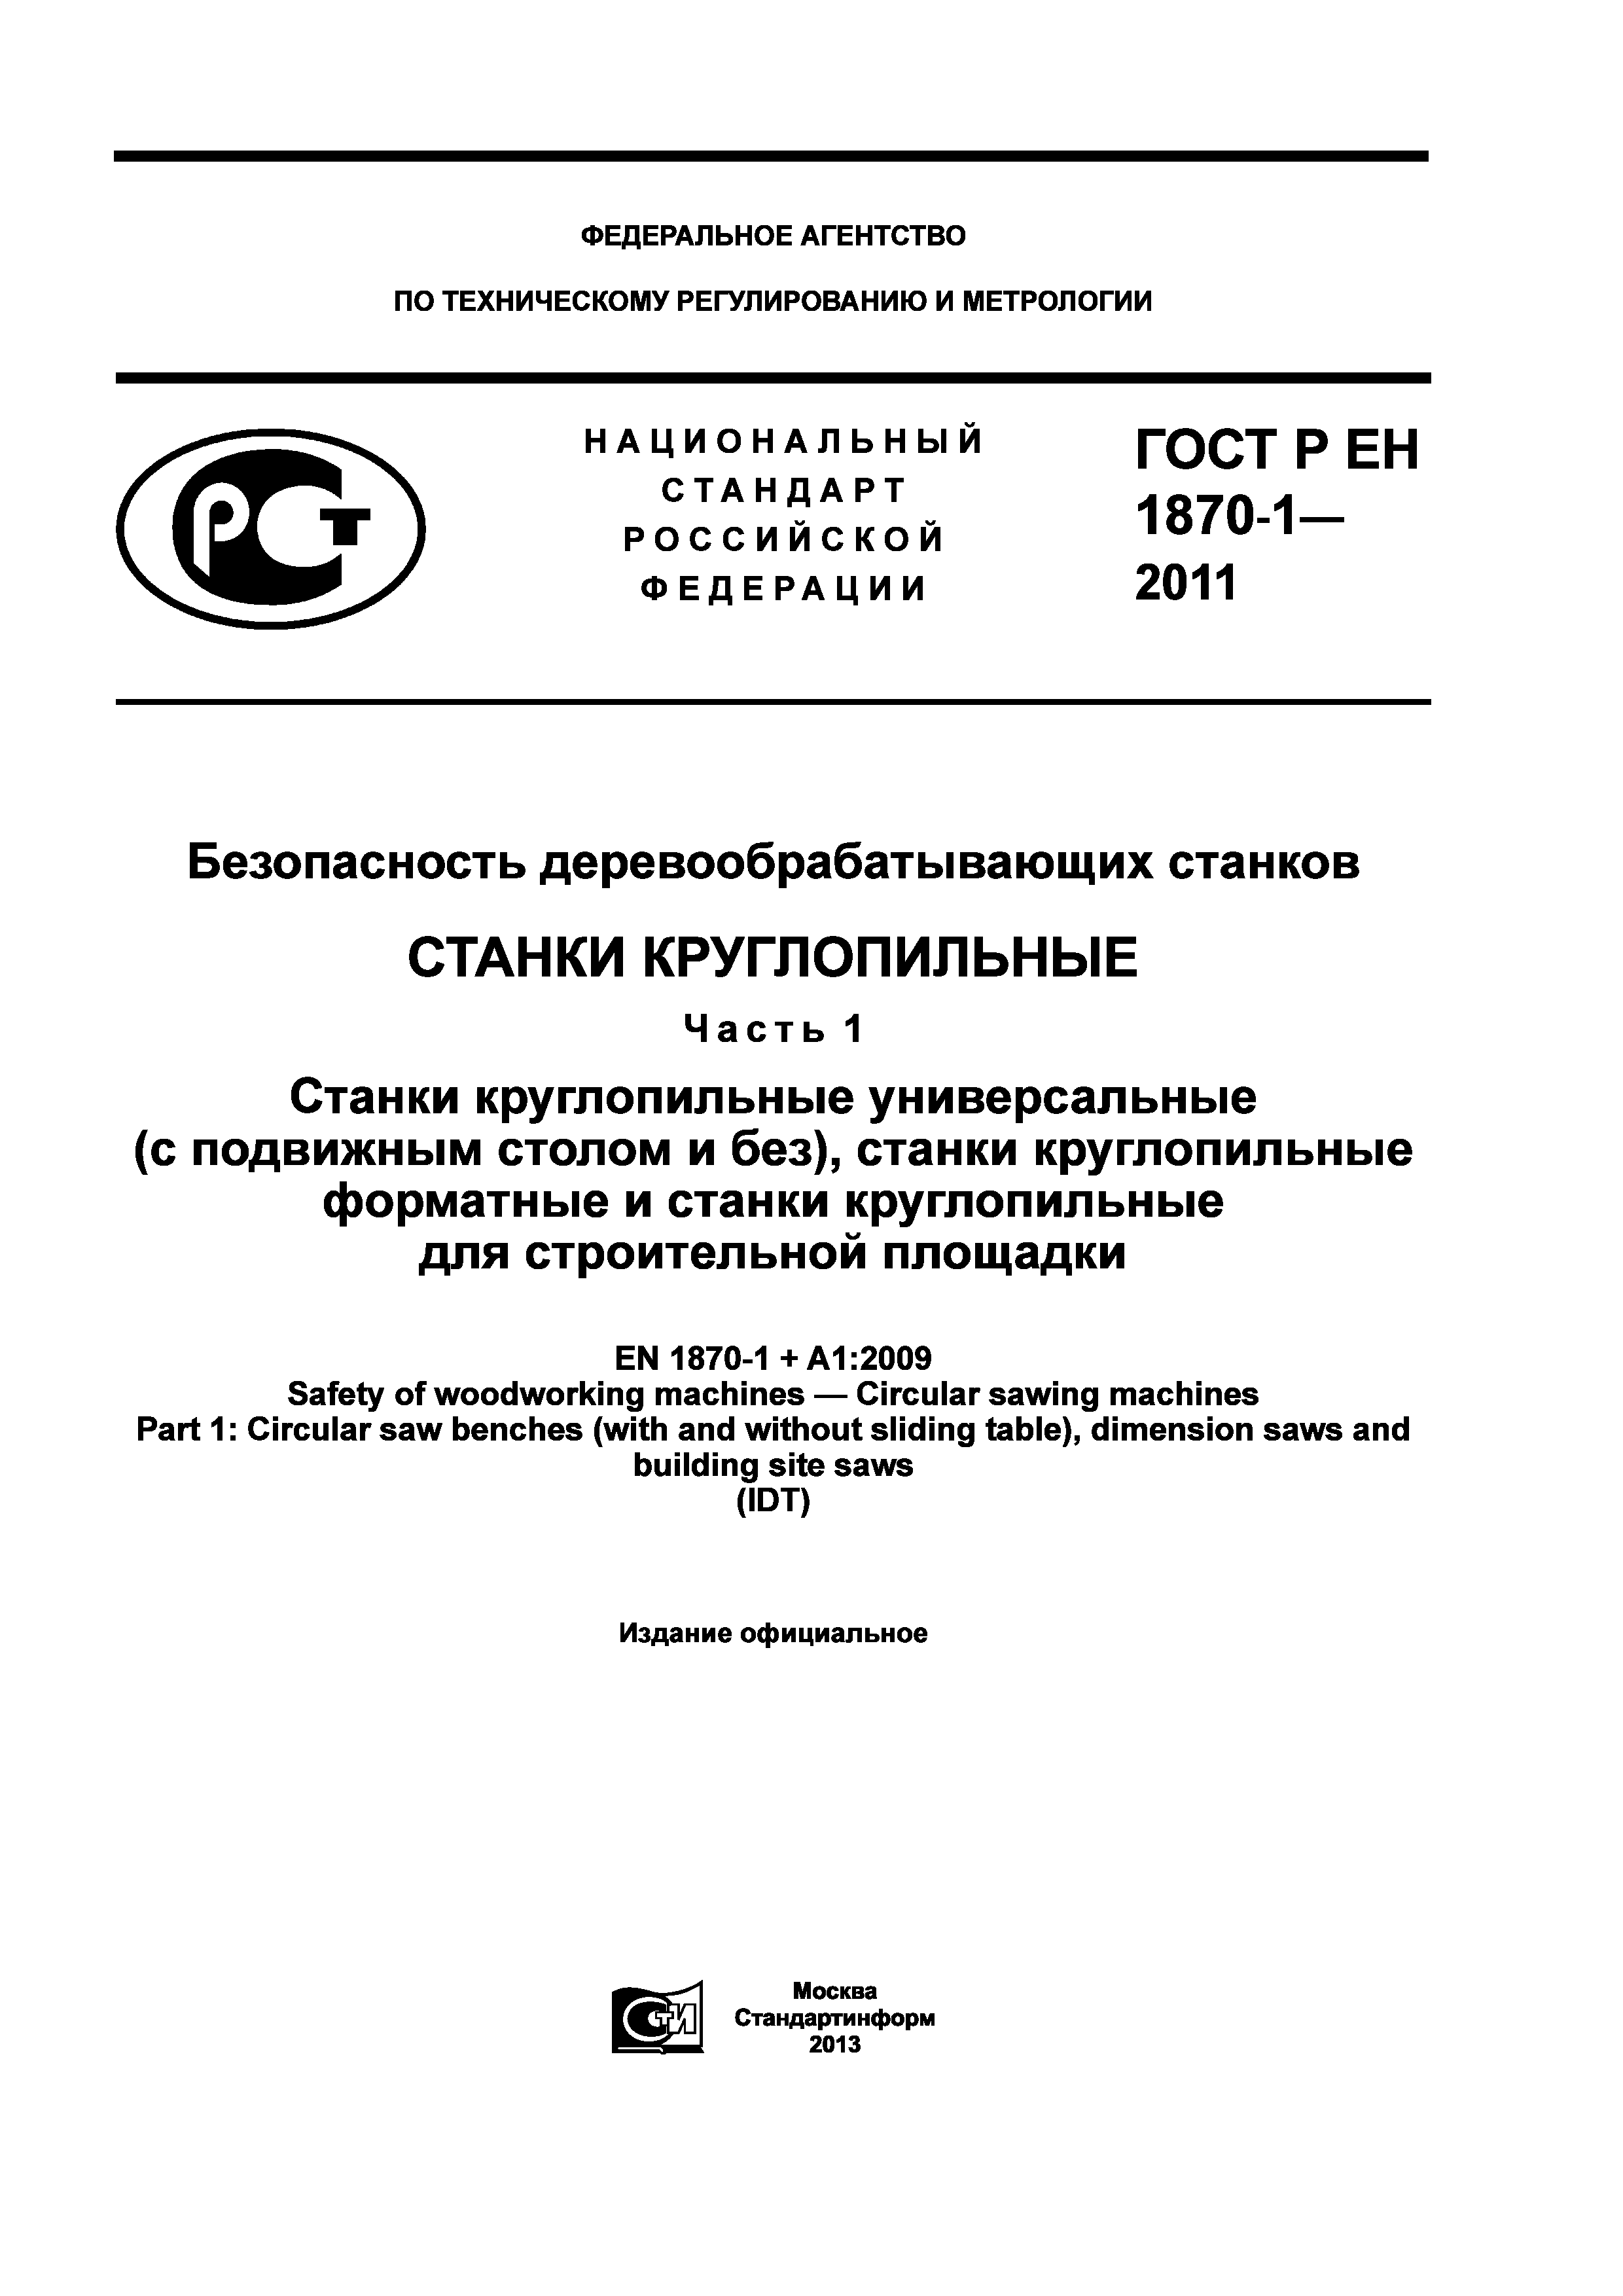 ГОСТ Р ЕН 1870-1-2011